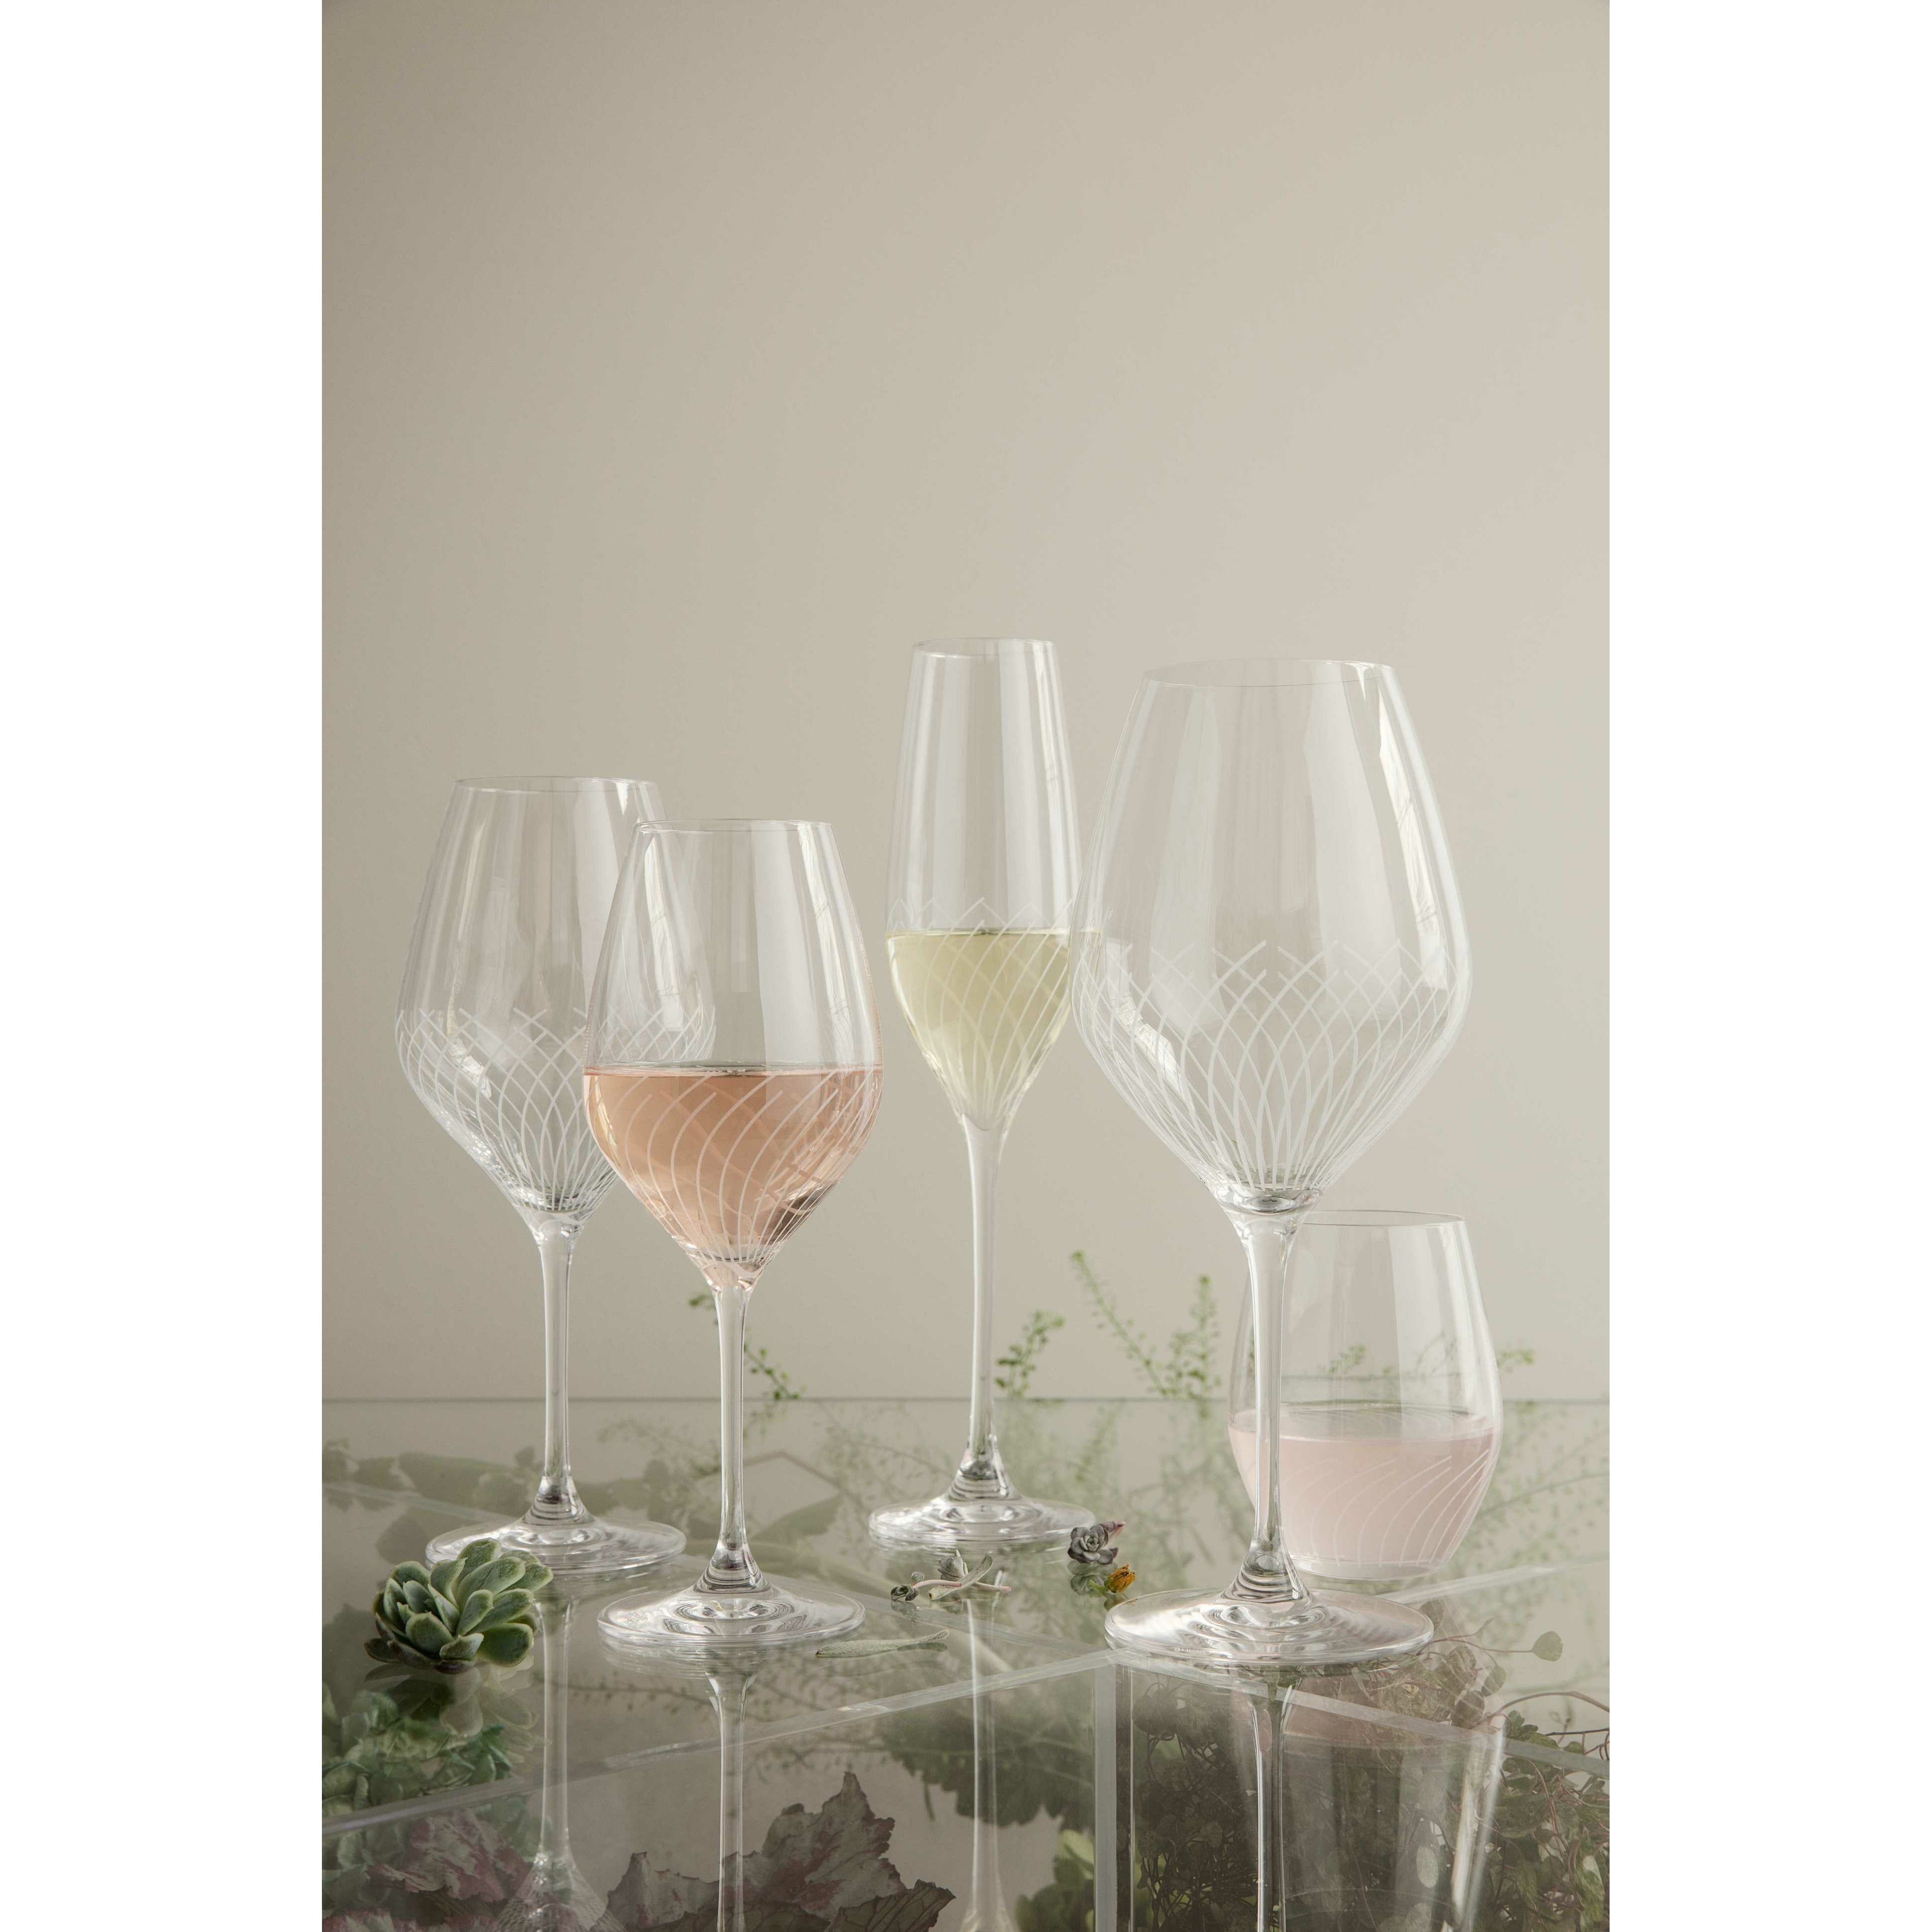 Holmegaard Cabernet Lines Burgundy Glass, 2 Pcs.